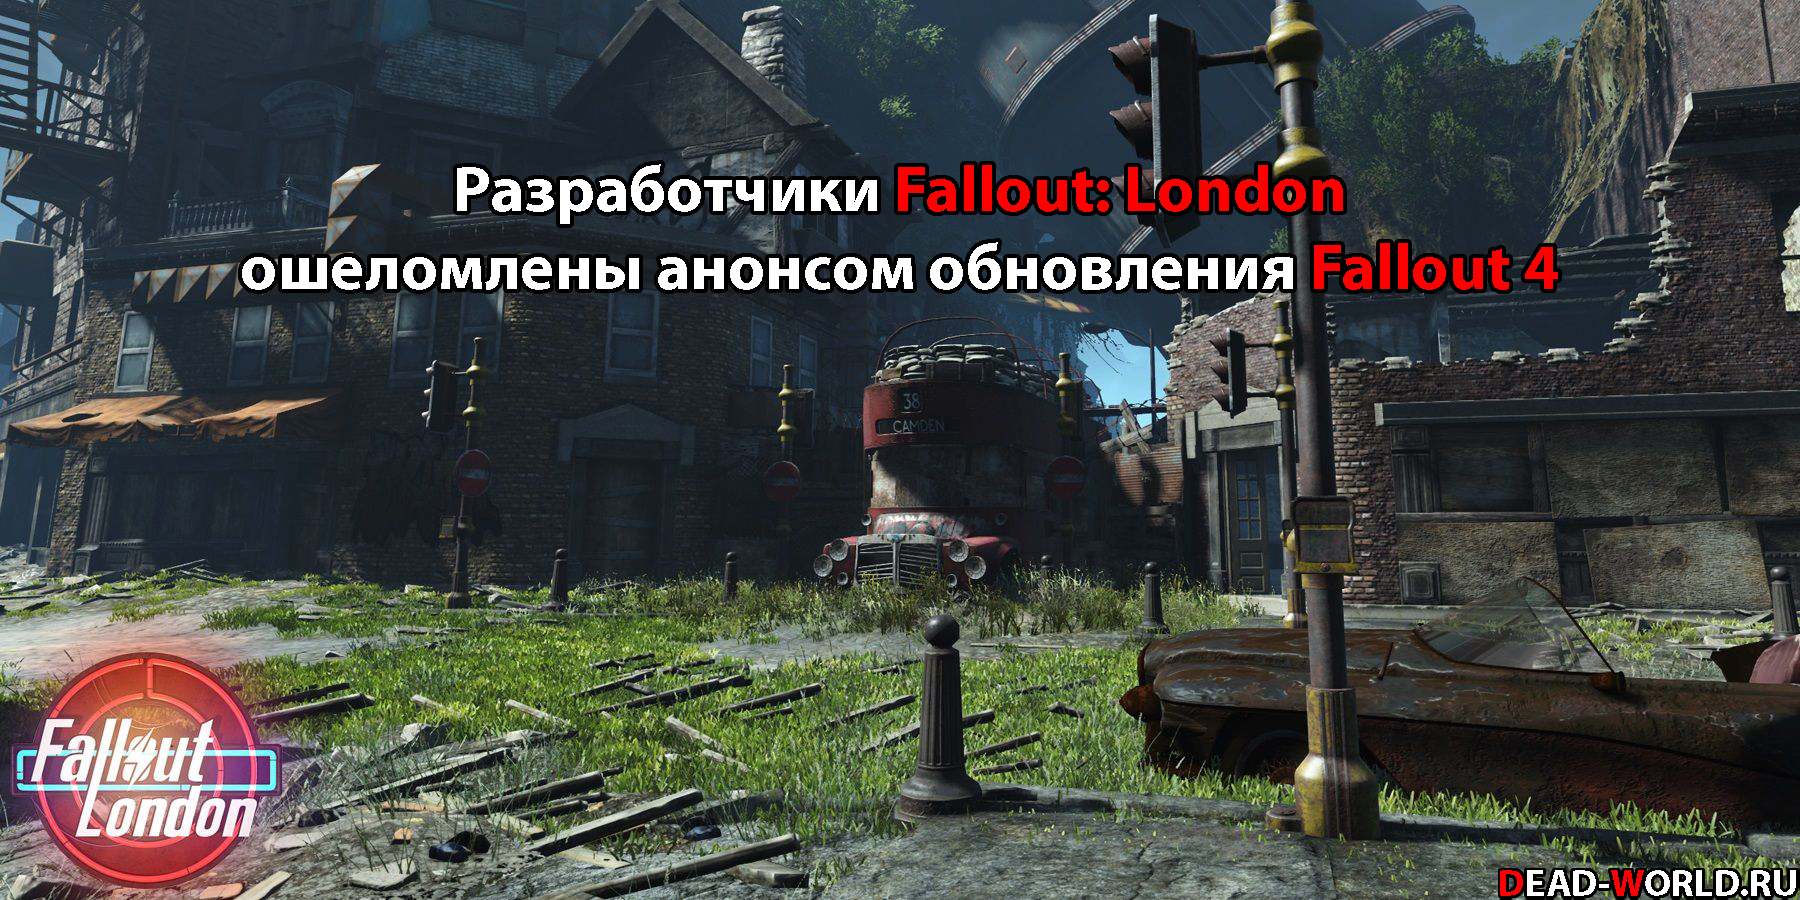 Fallout: London кажется задерживается